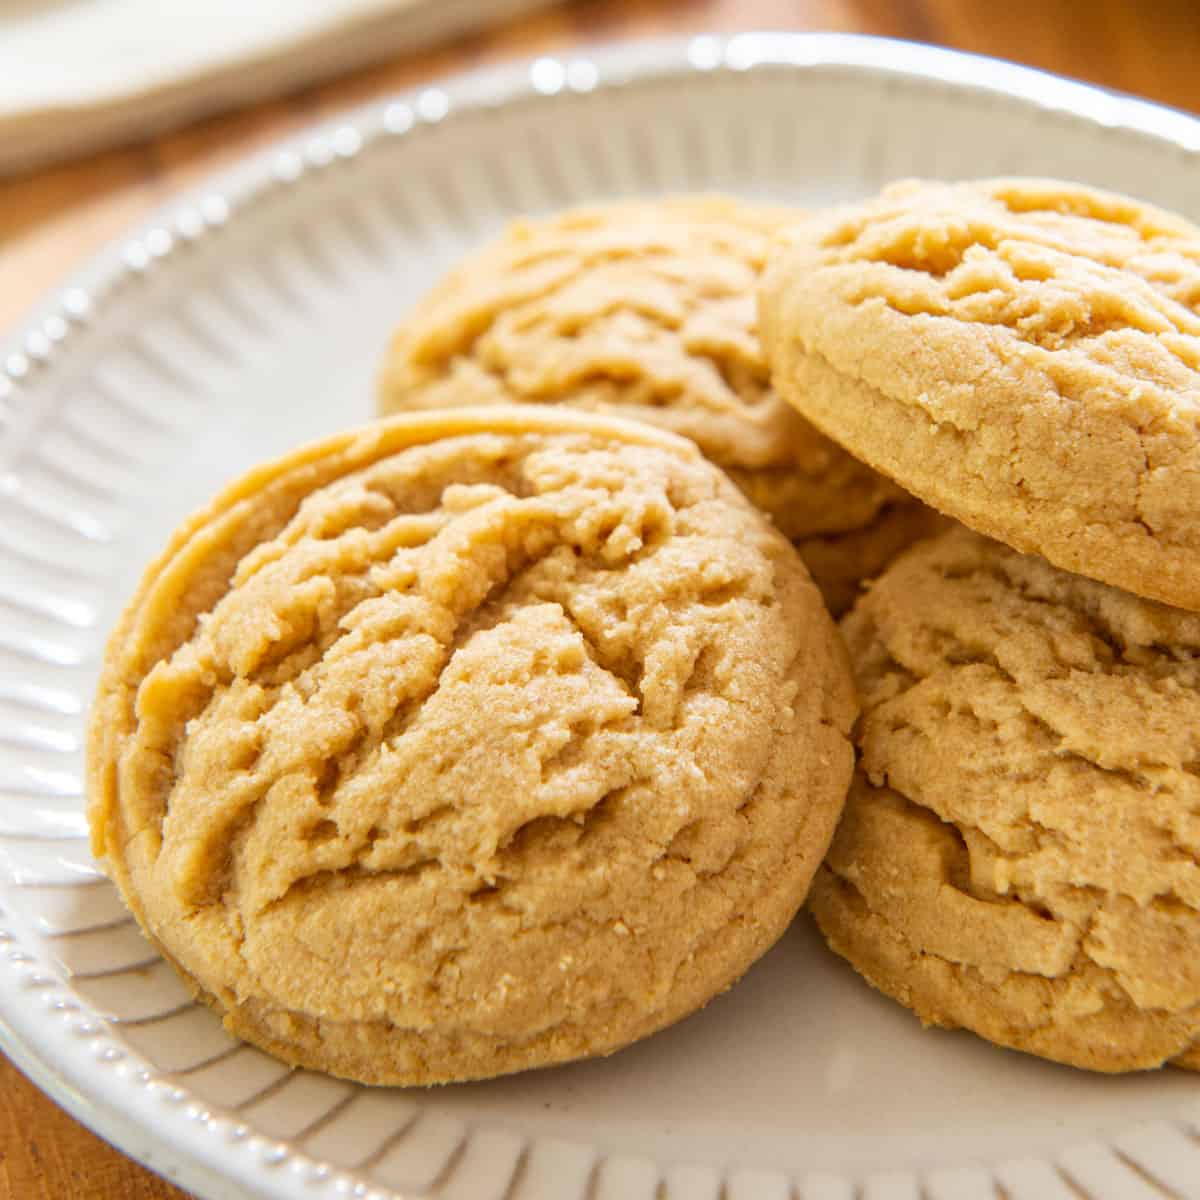 https://www.fifteenspatulas.com/wp-content/uploads/2020/08/Best-Peanut-Butter-Cookies.jpg